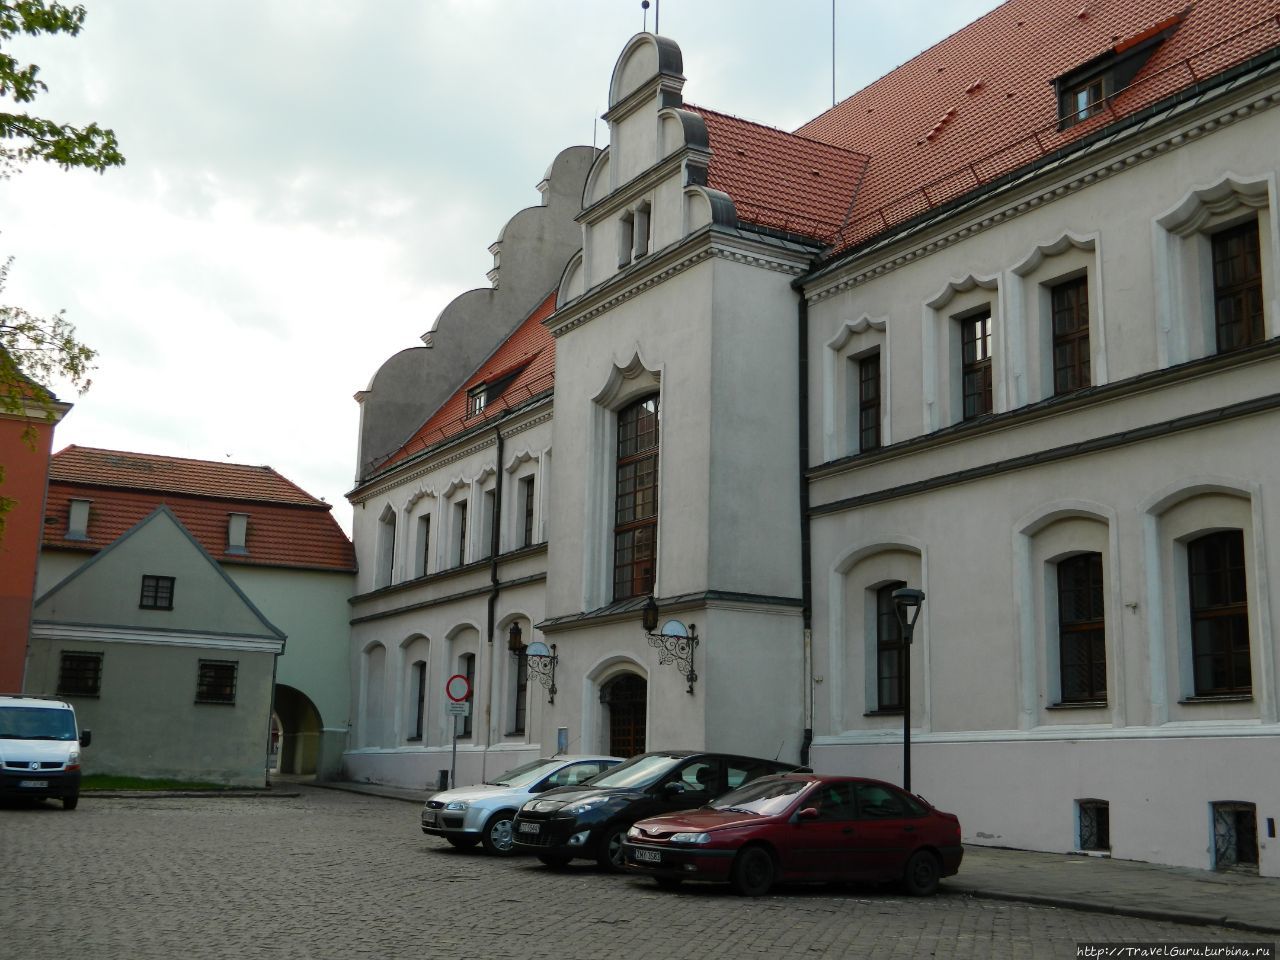 Здание ратуши сбоку Старгард-Щециньски, Польша